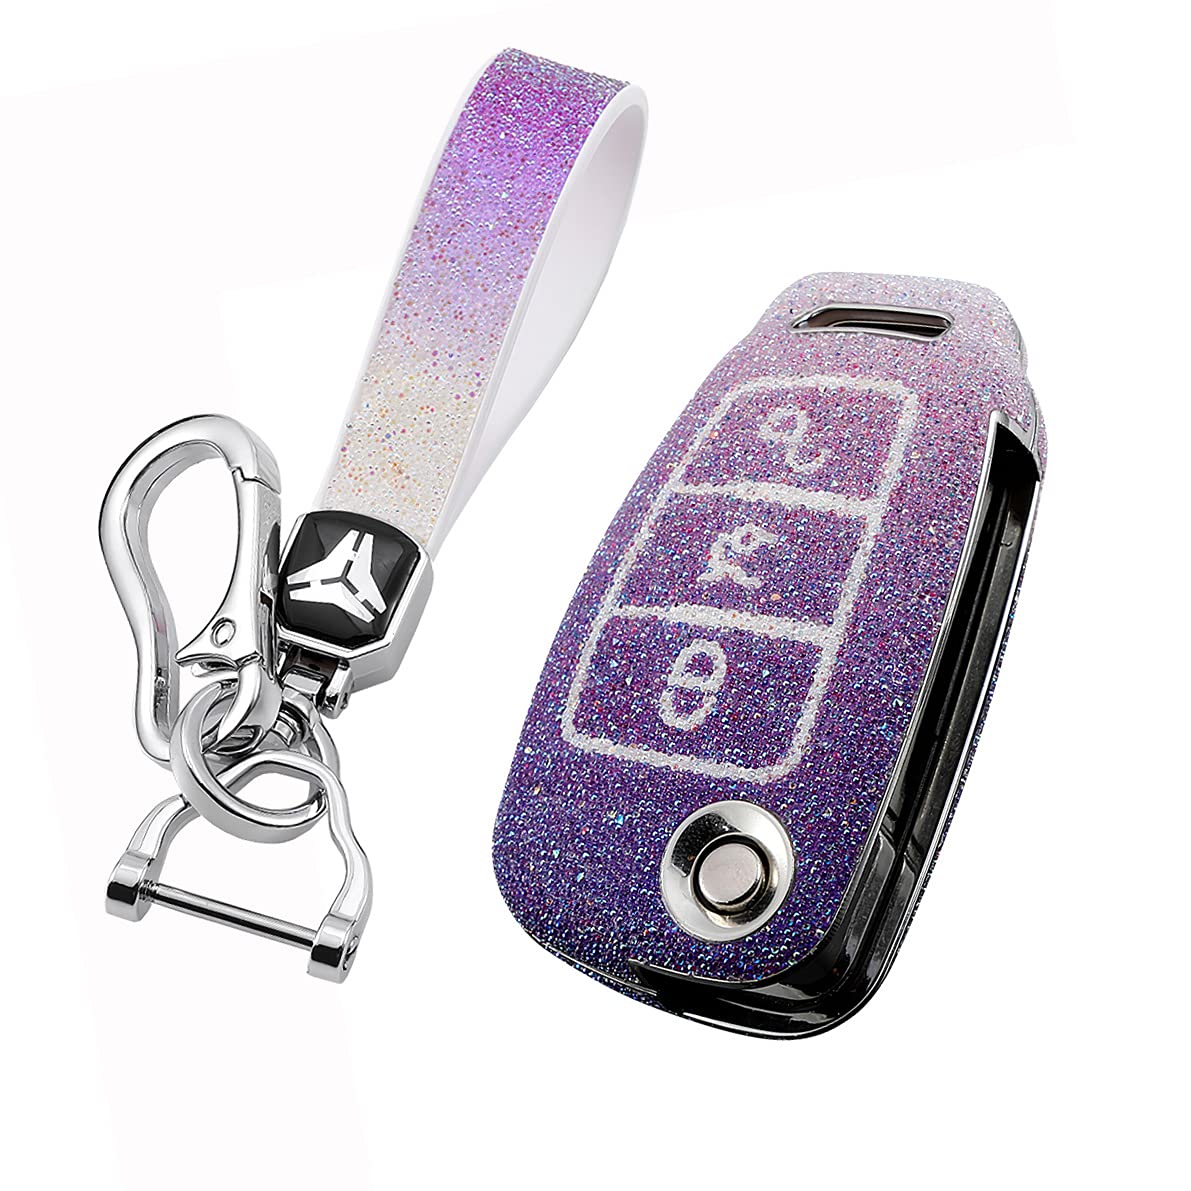 HIBEYO Bling Schlüsselhülle Passt für Audi Schutzhülle Autoschlüssel Hülle Cover für Audi A1 A3 A4 A6 Q3 Q5 Q7 S3 R8 TT Klappschlüssel Fernbedienung Schlüsselbox Schlüsselbund PC+Strass-Lila von HIBEYO